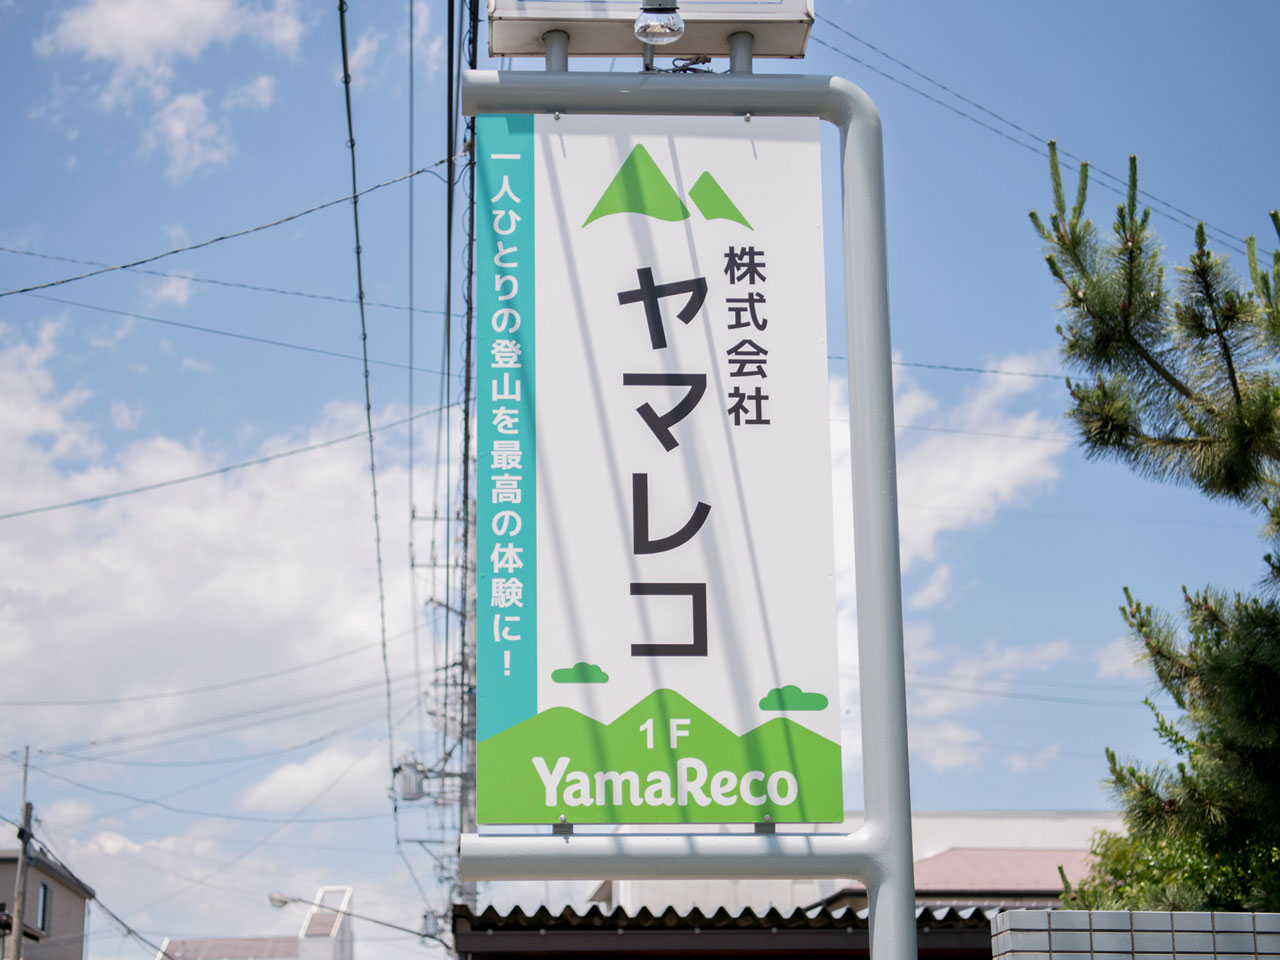 同社が運営する、日本最大級の登山専用コミュニティサイト『ヤマレコ』は、登山に役立つ様々な機能を備えたWebサービスだ。